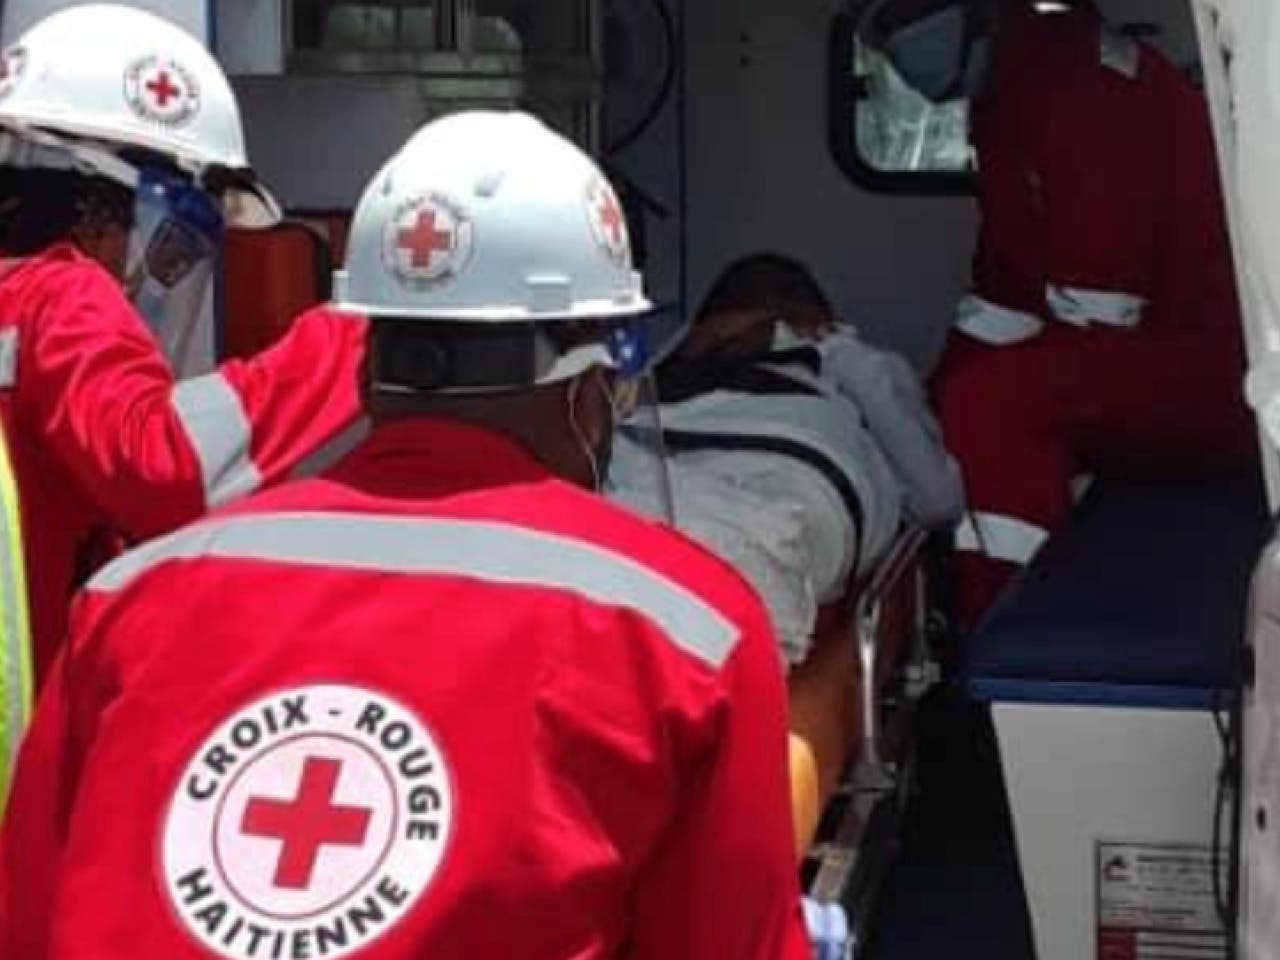 La Cruz Roja pide a todos en Haití “respetar” la misión médica y humanitaria